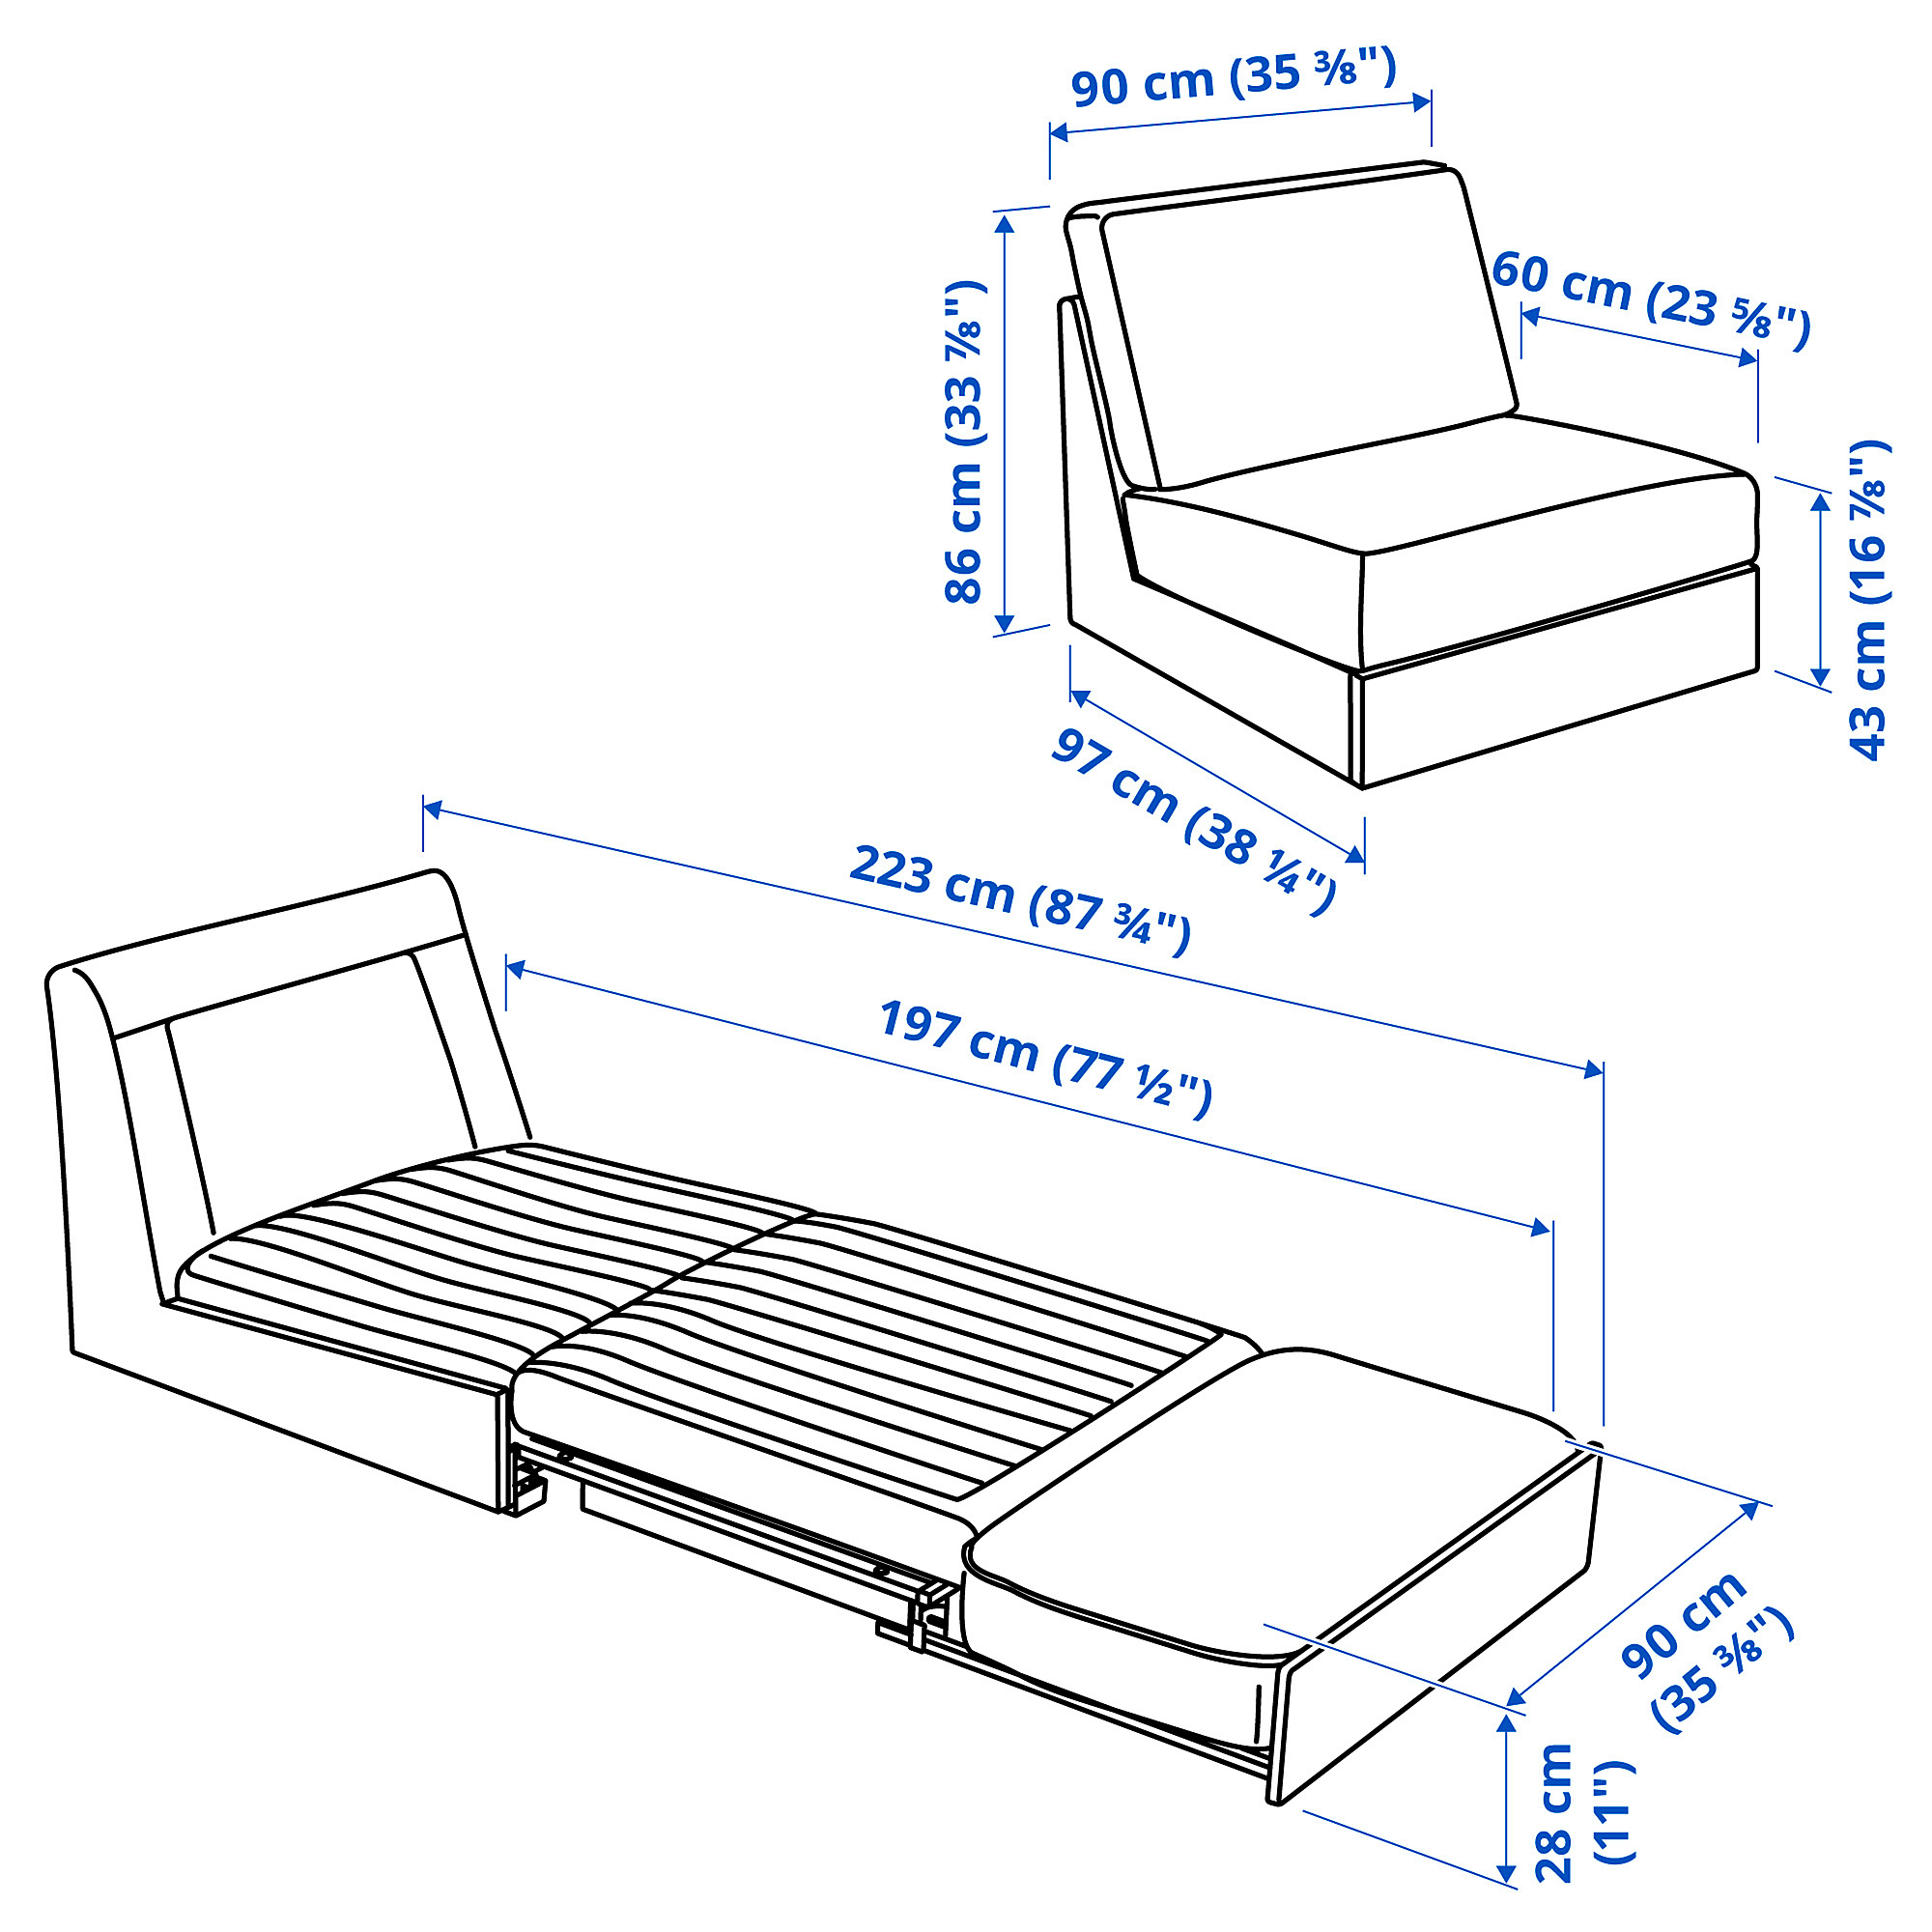 KIVIK 1-seat sofa-bed